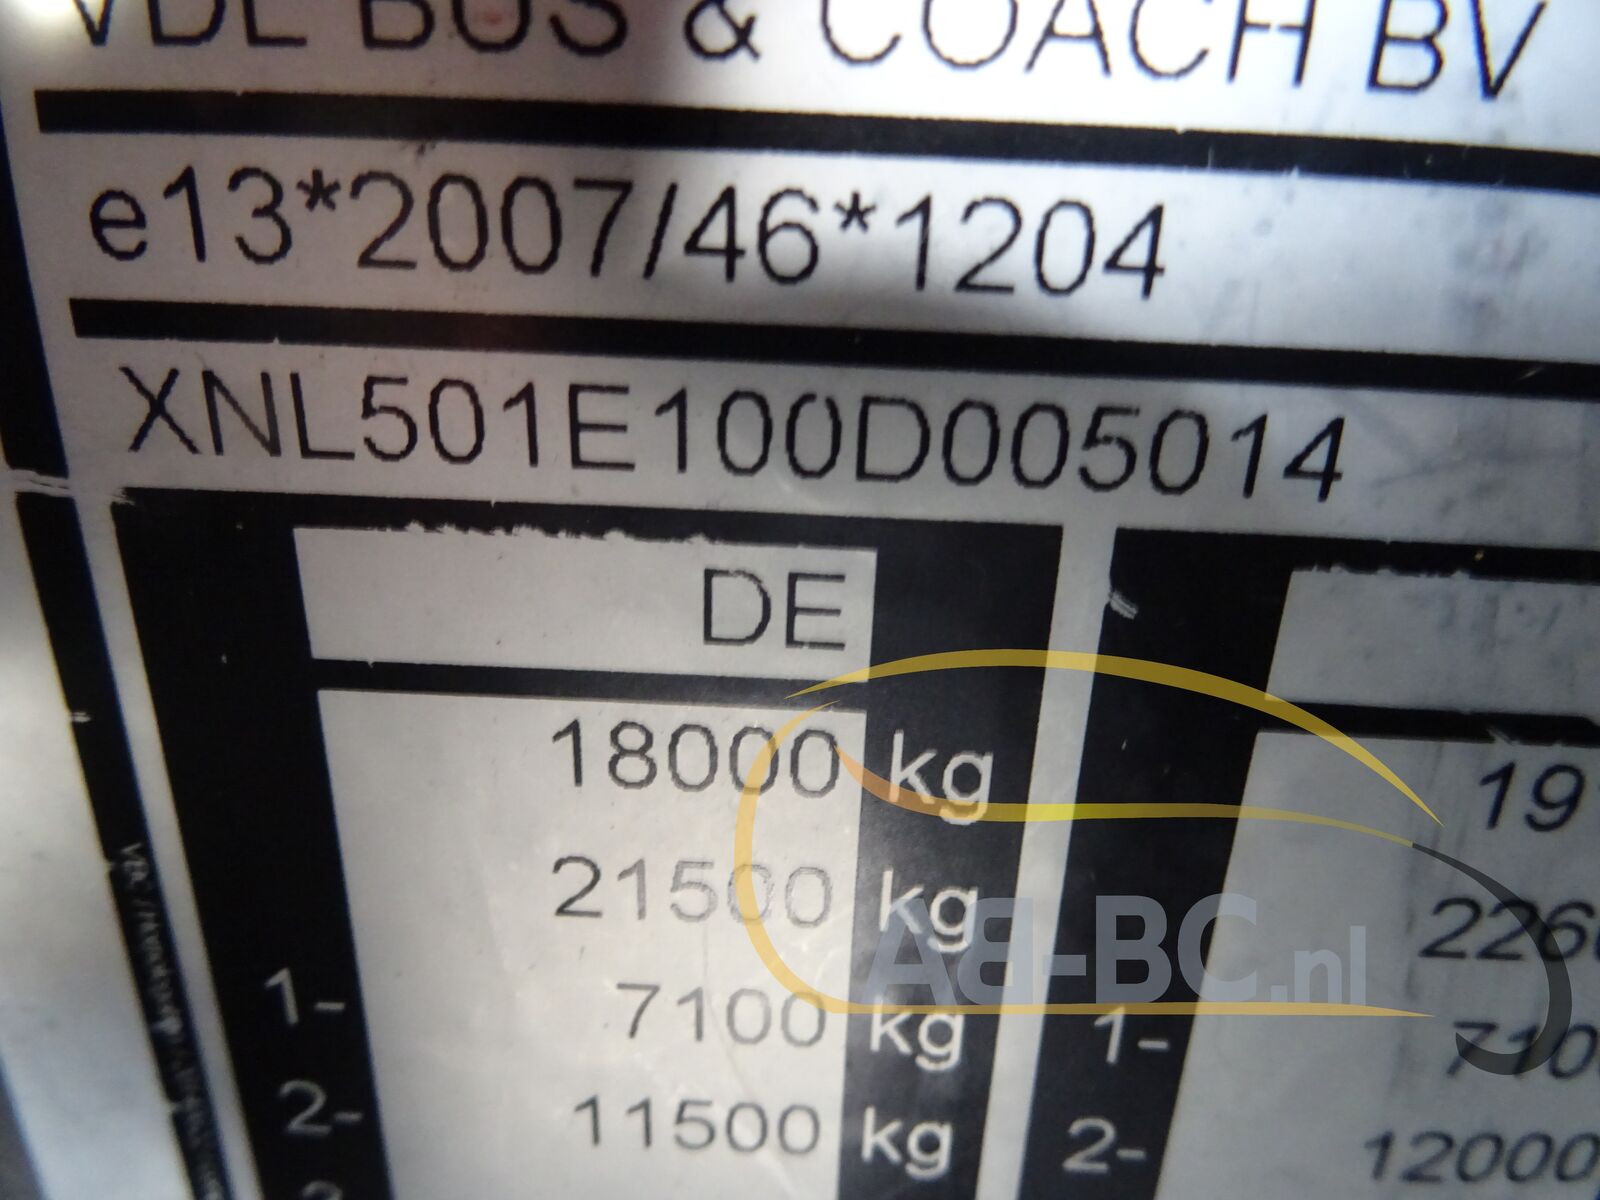 coach-bus-VDL-Futura-FHD2-129-440-51-Seats-EURO-6---1651224576729736129_orig_99b75b95583b0d70749cdf532c45e251--22042912260636414000